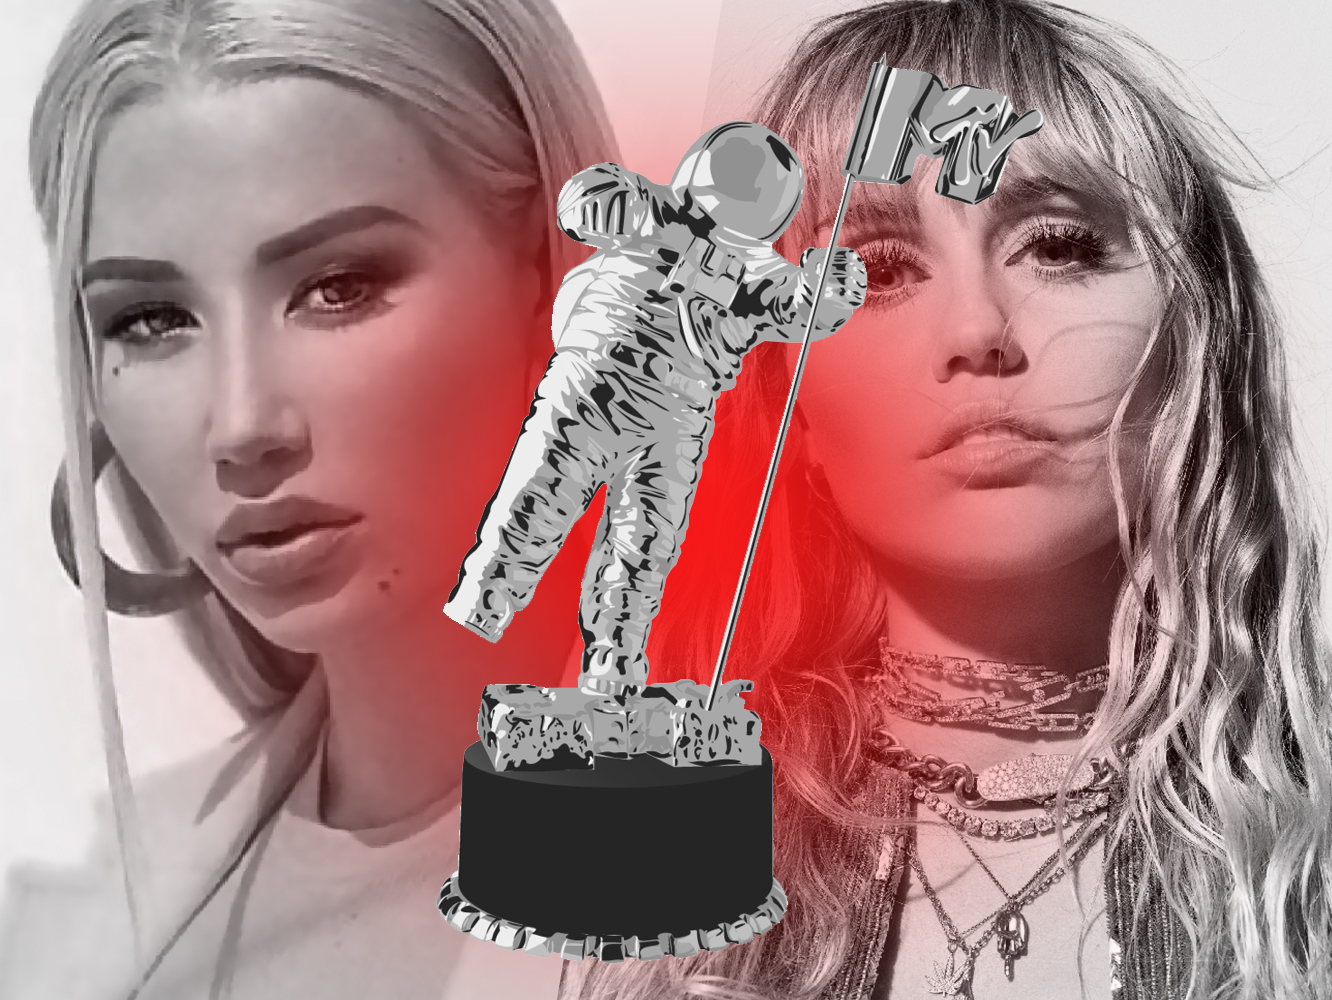  Premios VMA 2019 | ¿A quién se han olvidado en las nominaciones de la MTV?